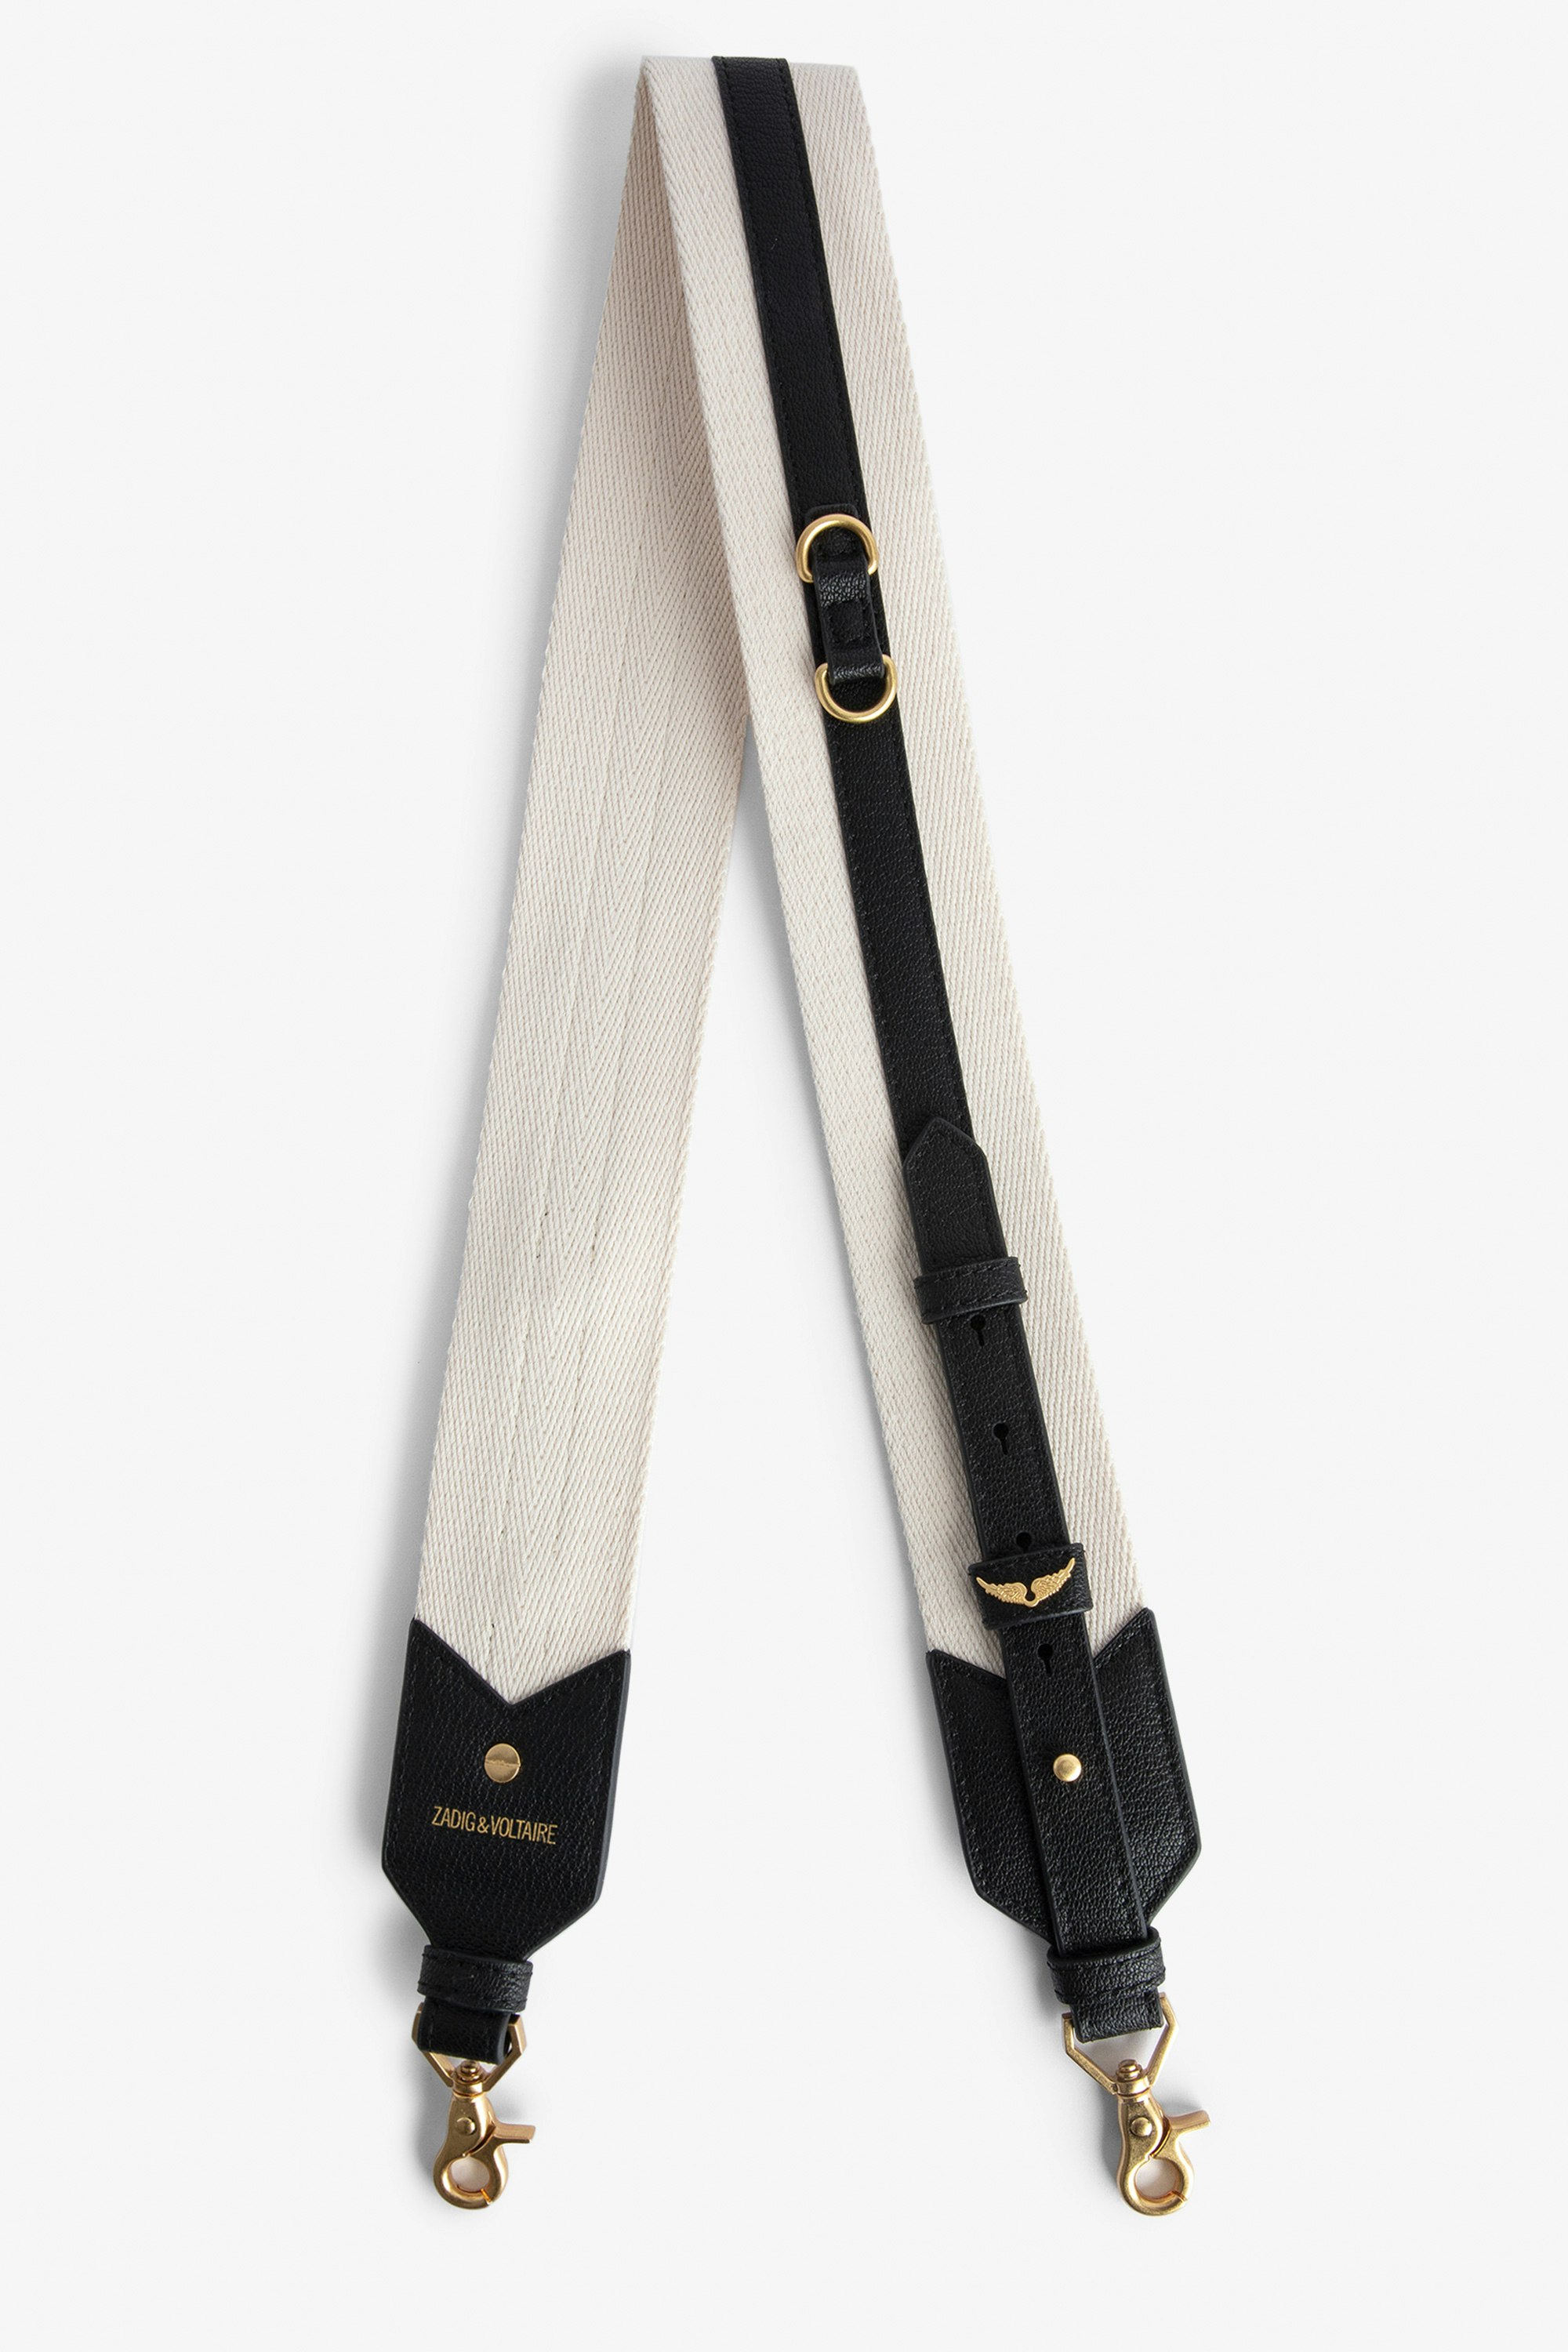 Adjustable Shoulder Strap - Adjustable ecru canvas shoulder strap with black leather panels.